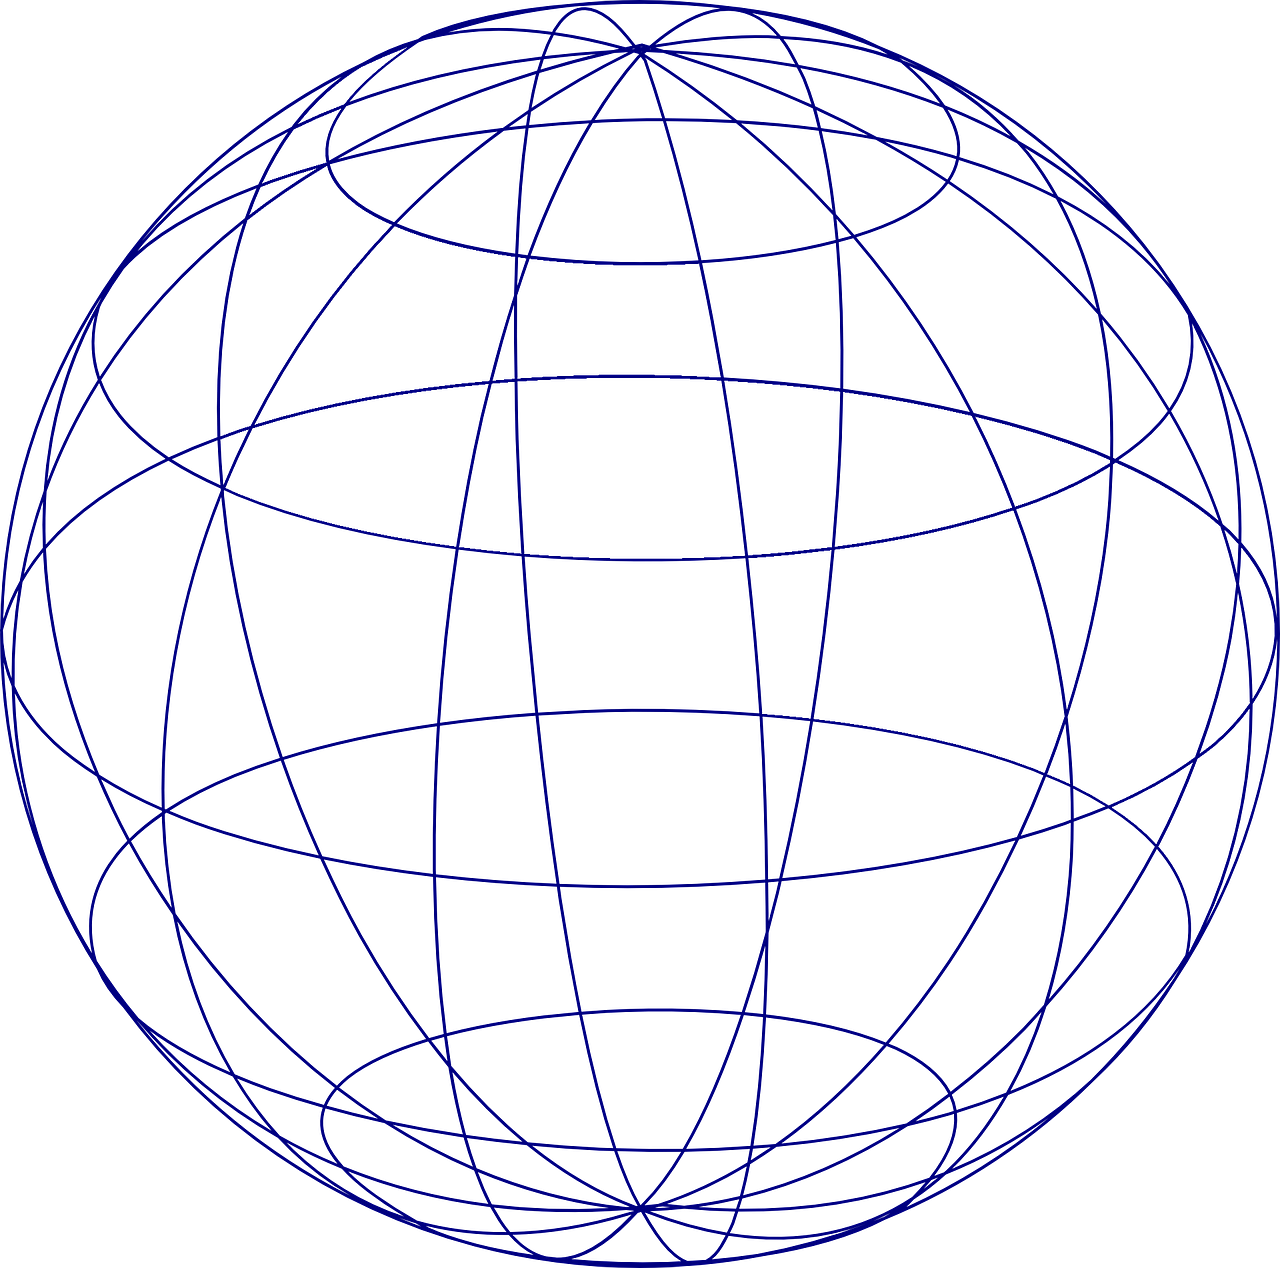 sphere globe grid free photo